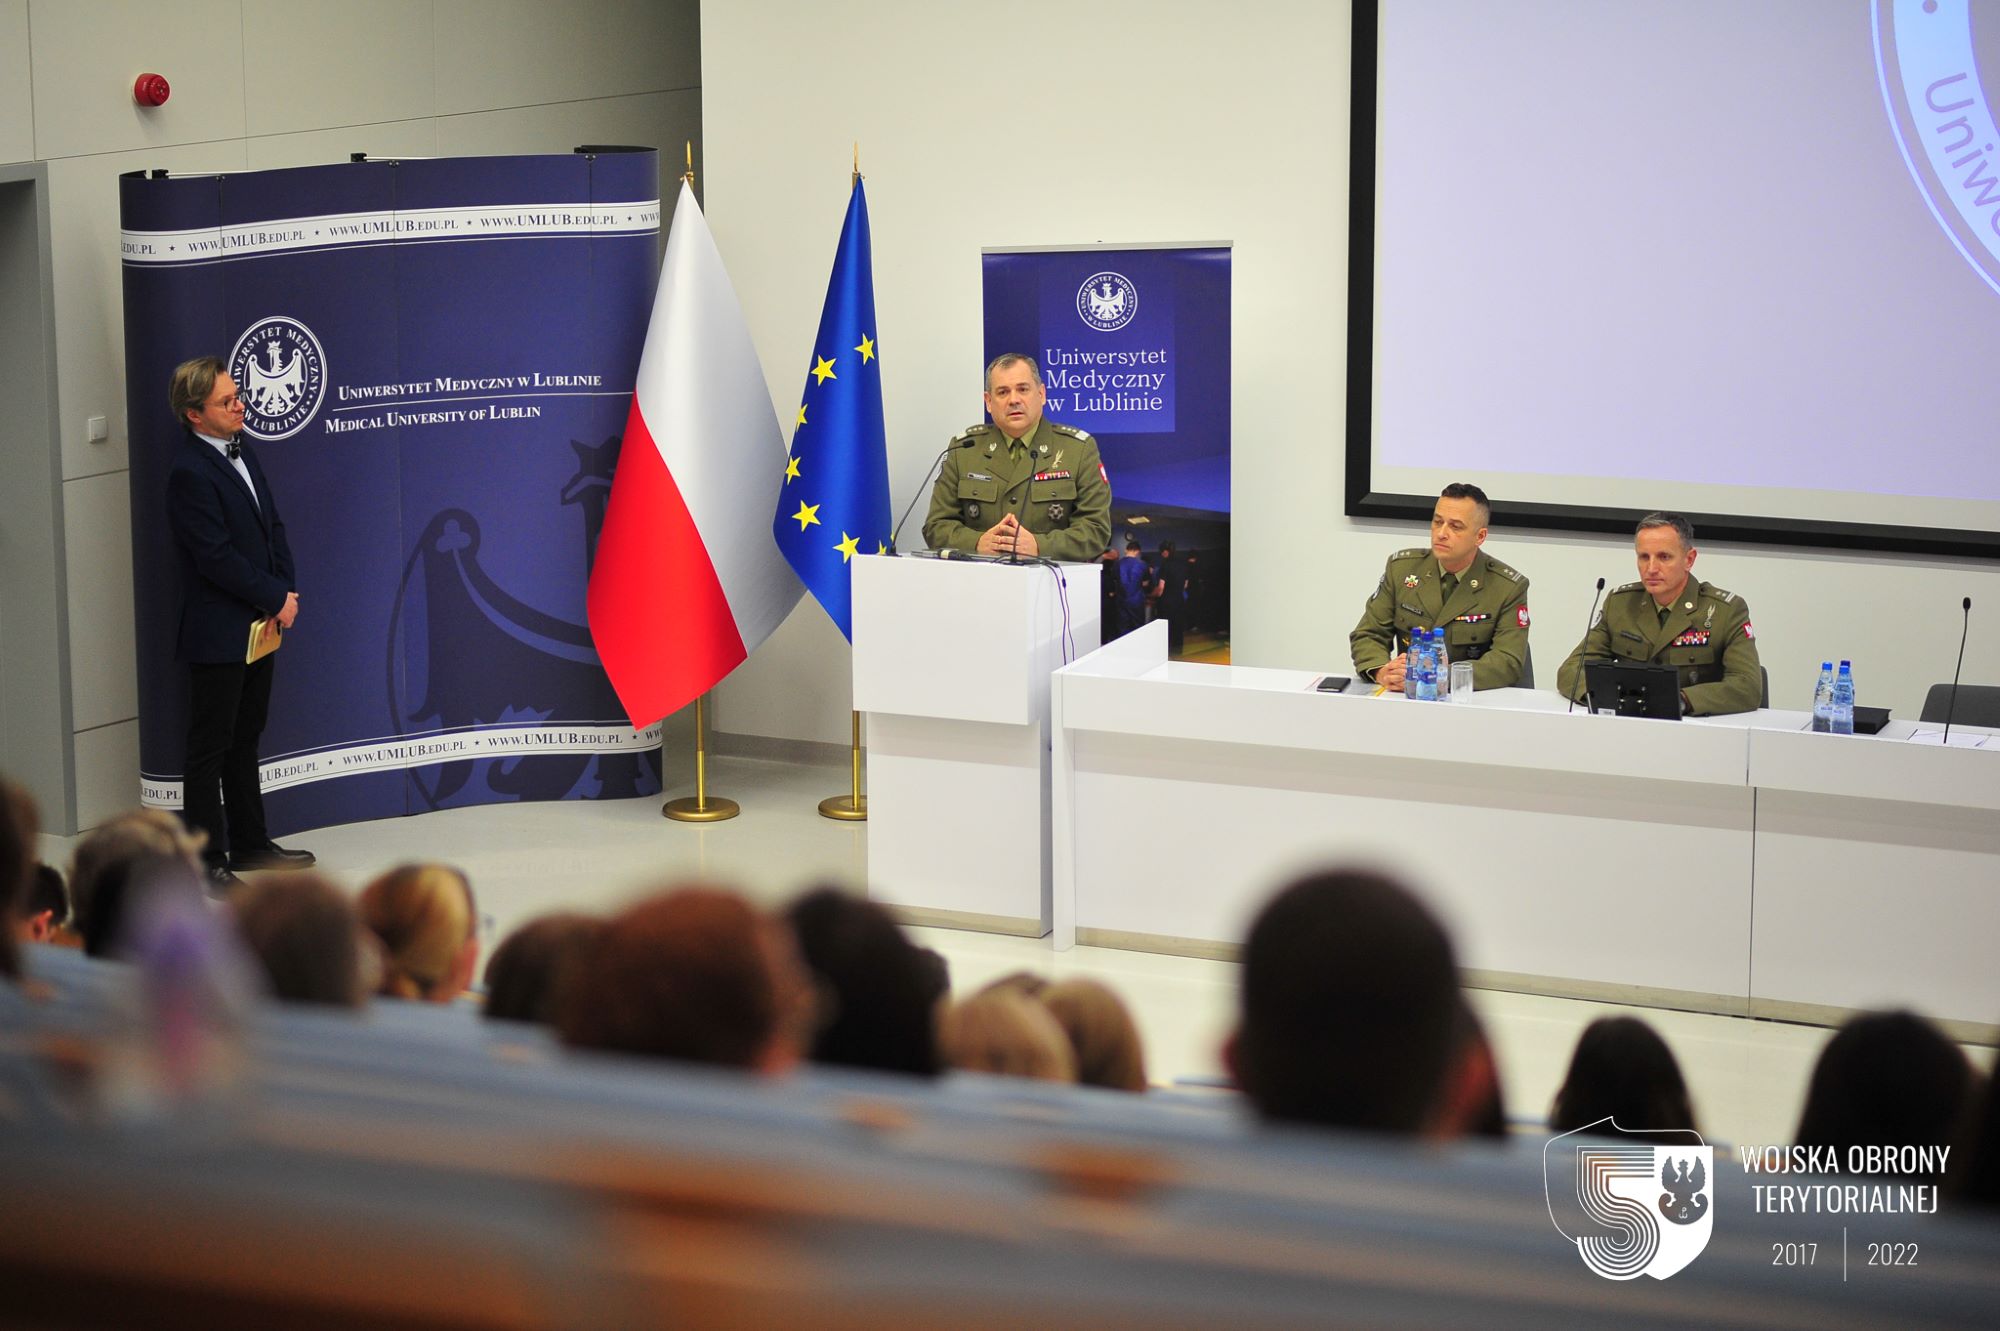 Dowództwo Wojsk Obrony Terytorialnej podpisało porozumienie o współpracy z Uniwersytetem Medycznym w Lublinie